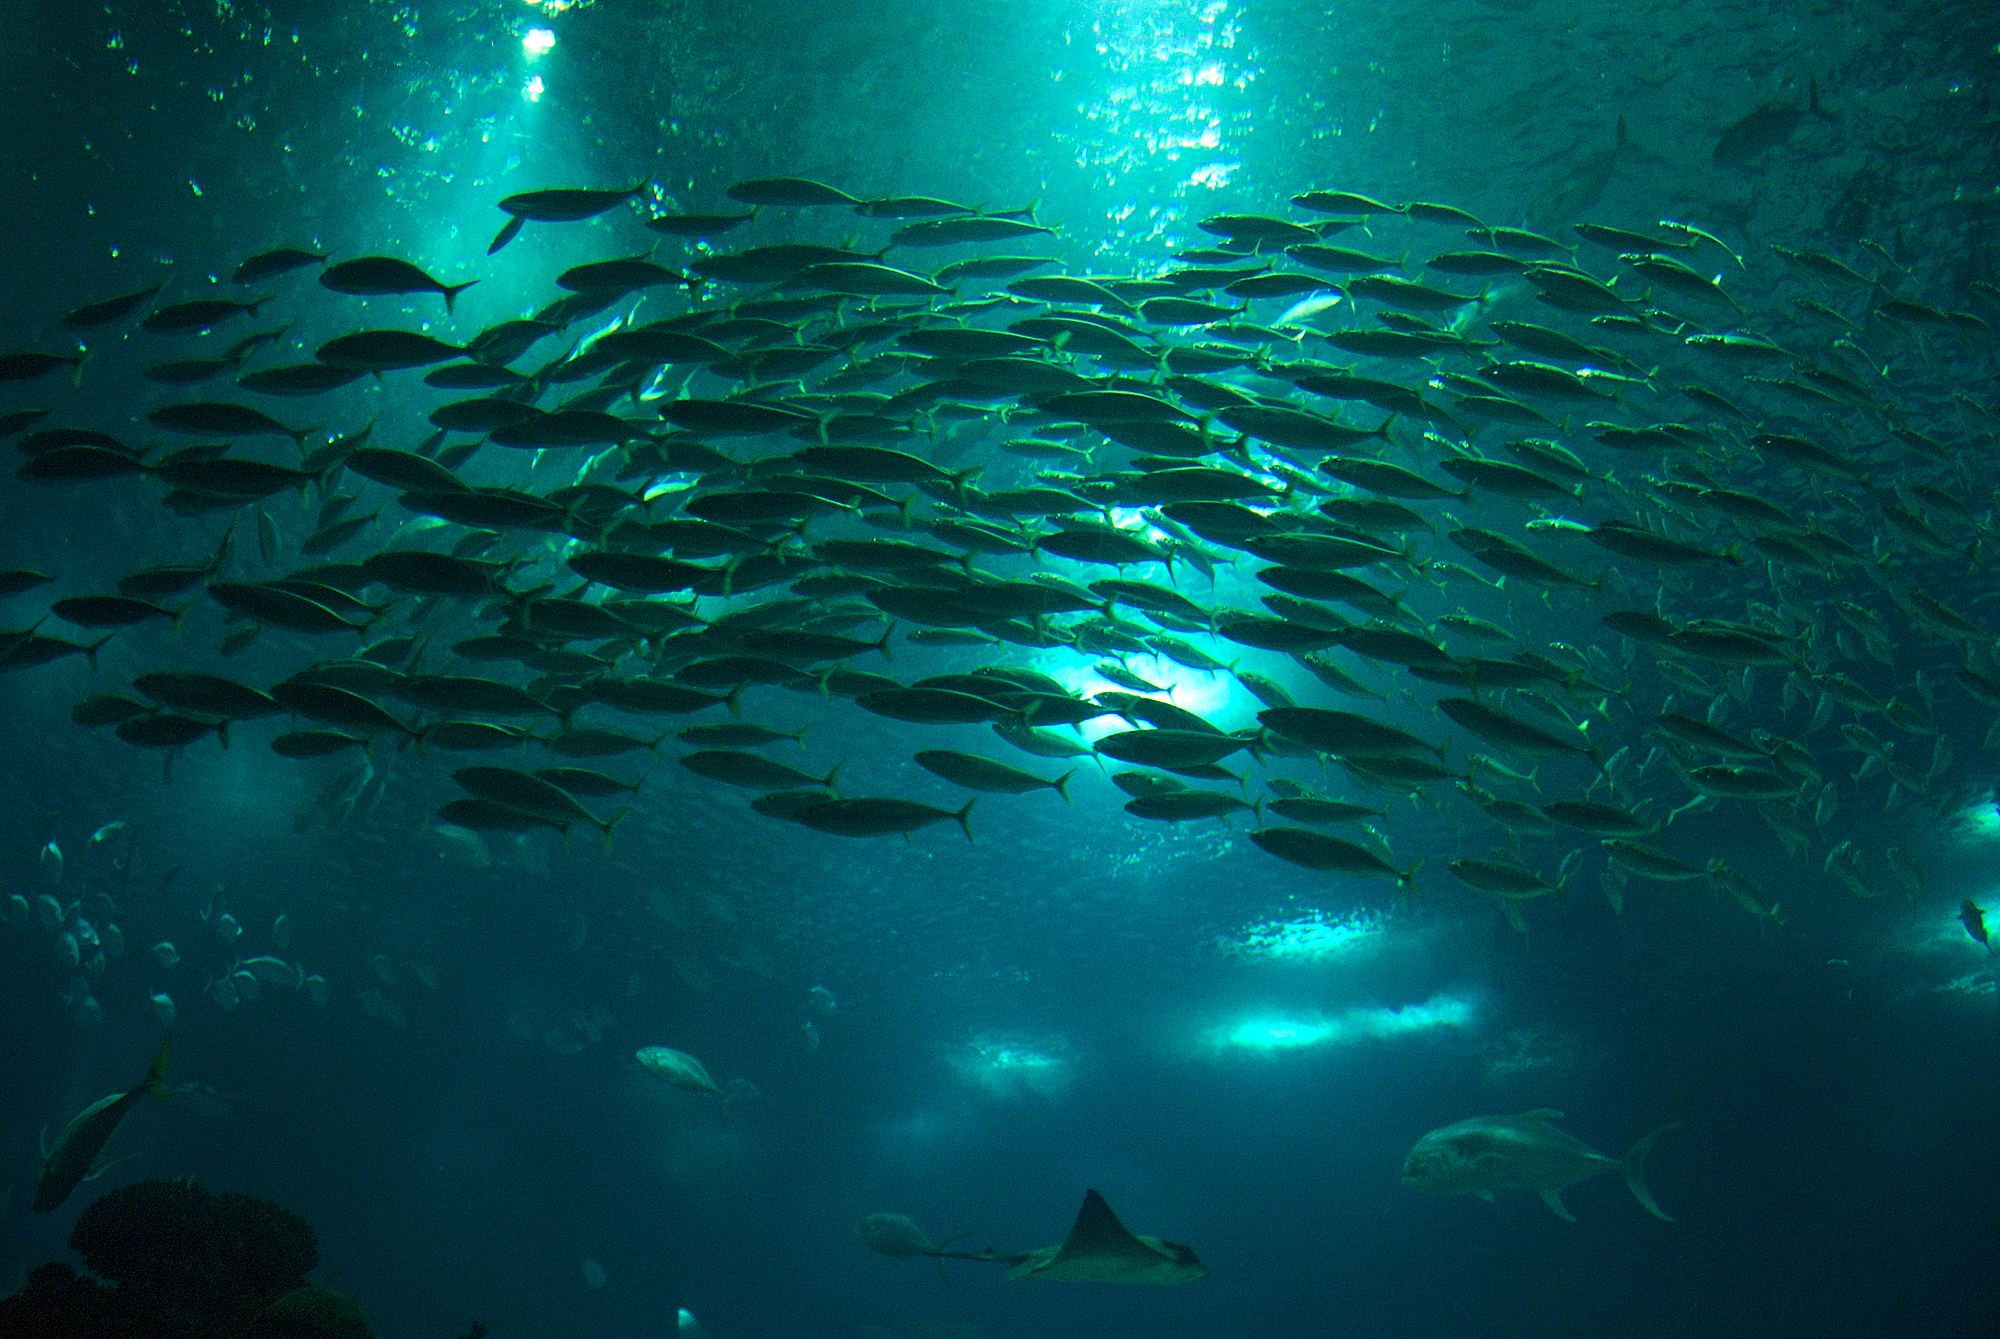 School Of Fish 1920x1080p HD Underwater Wallpaper